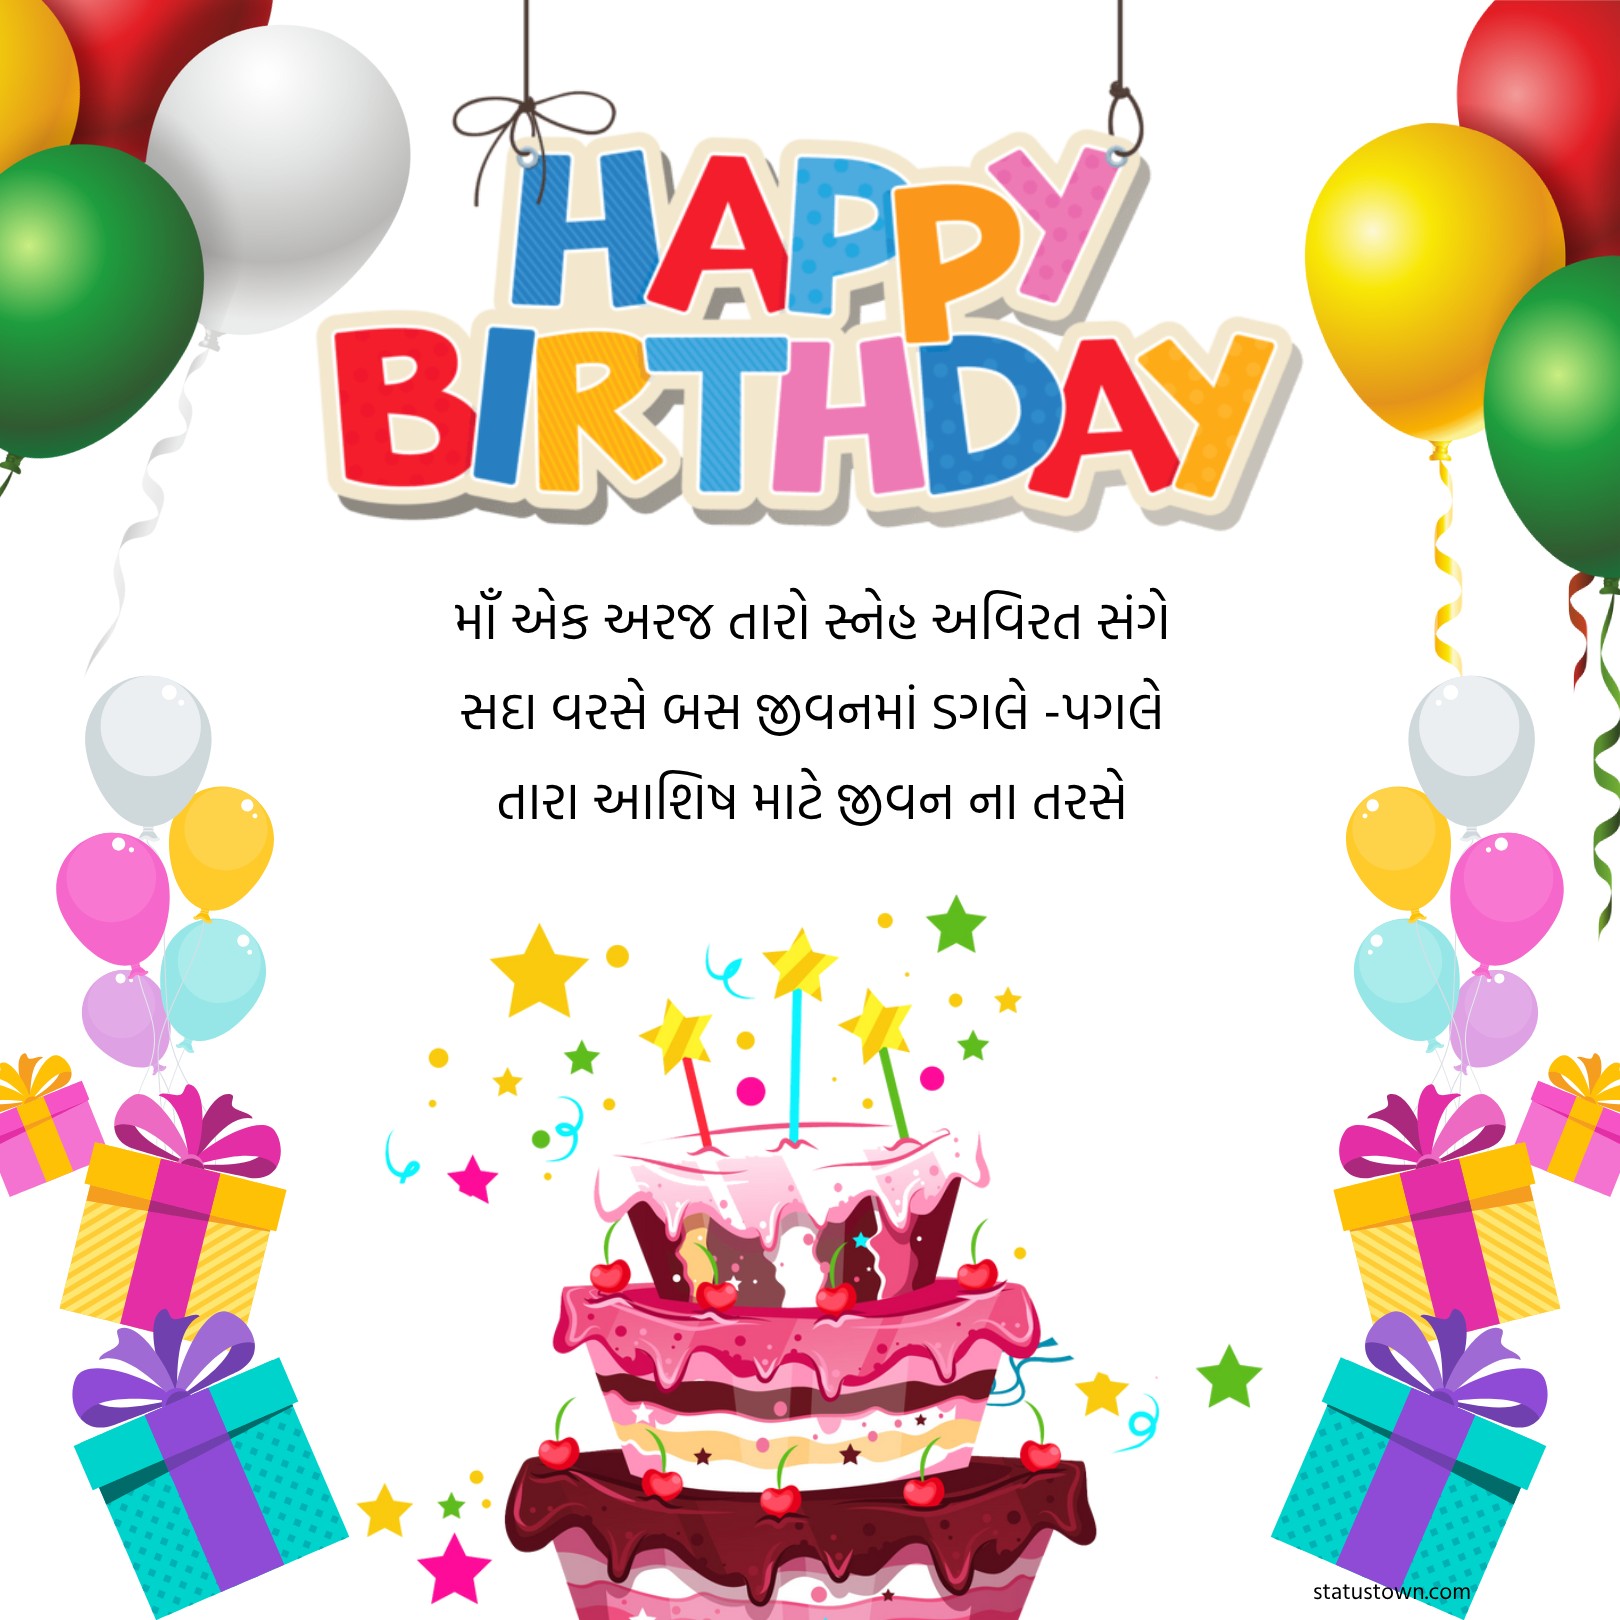 માઁ એક અરજ તારો સ્નેહ અવિરત સંગે સદા વરસે, બસ જીવનમાં ડગલે -પગલે તારા આશિષ માટે જીવન ના તરસે. - Birthday Wishes For Mom in Gujarati